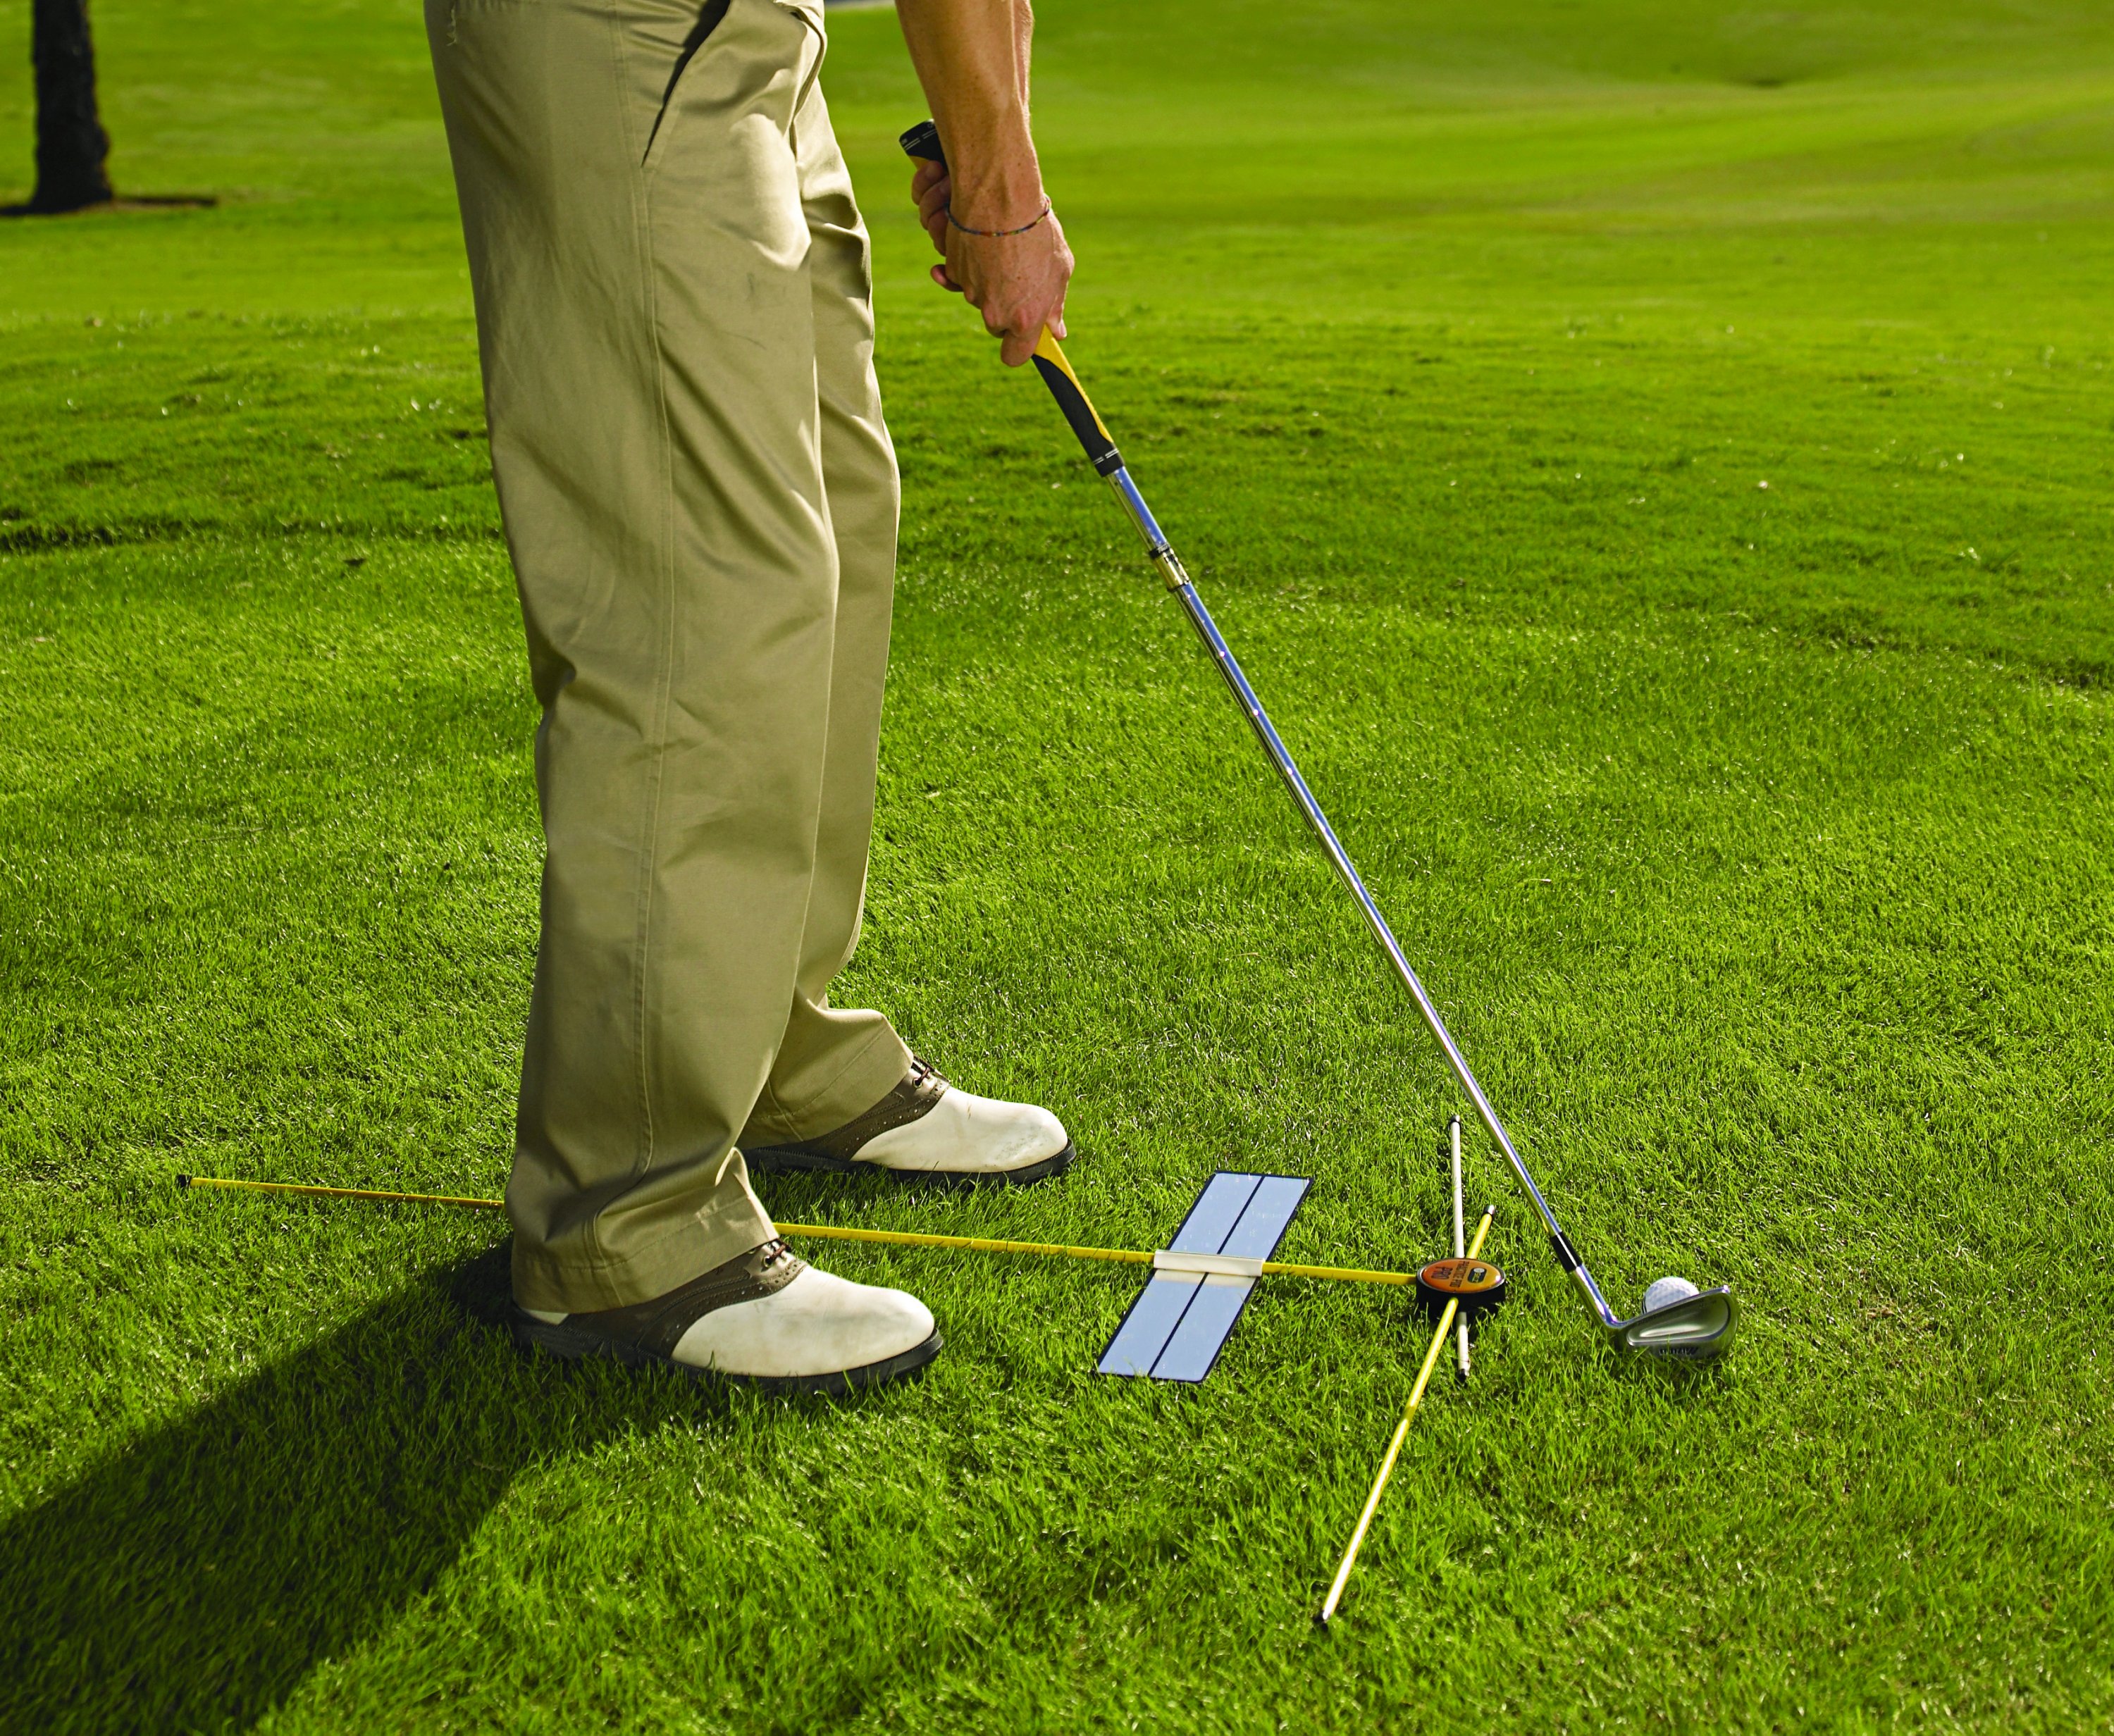 Practice POD should help your golf SKLZ